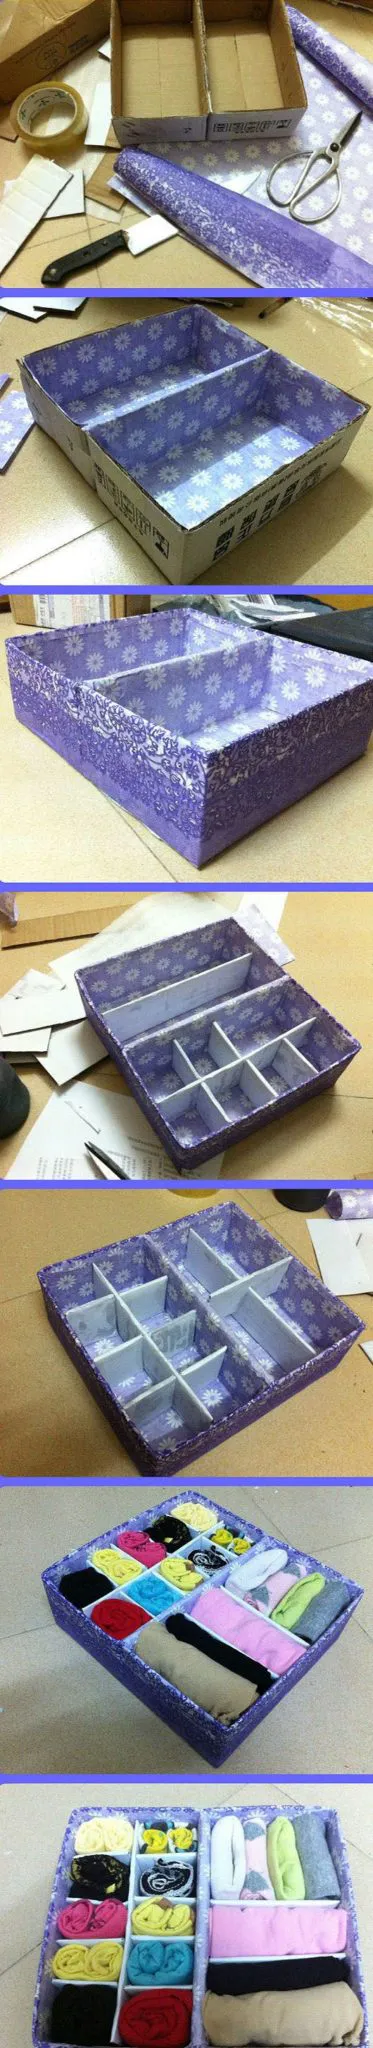 cajas de cartón forradas con papel o tela para ordenar cajones paso a paso